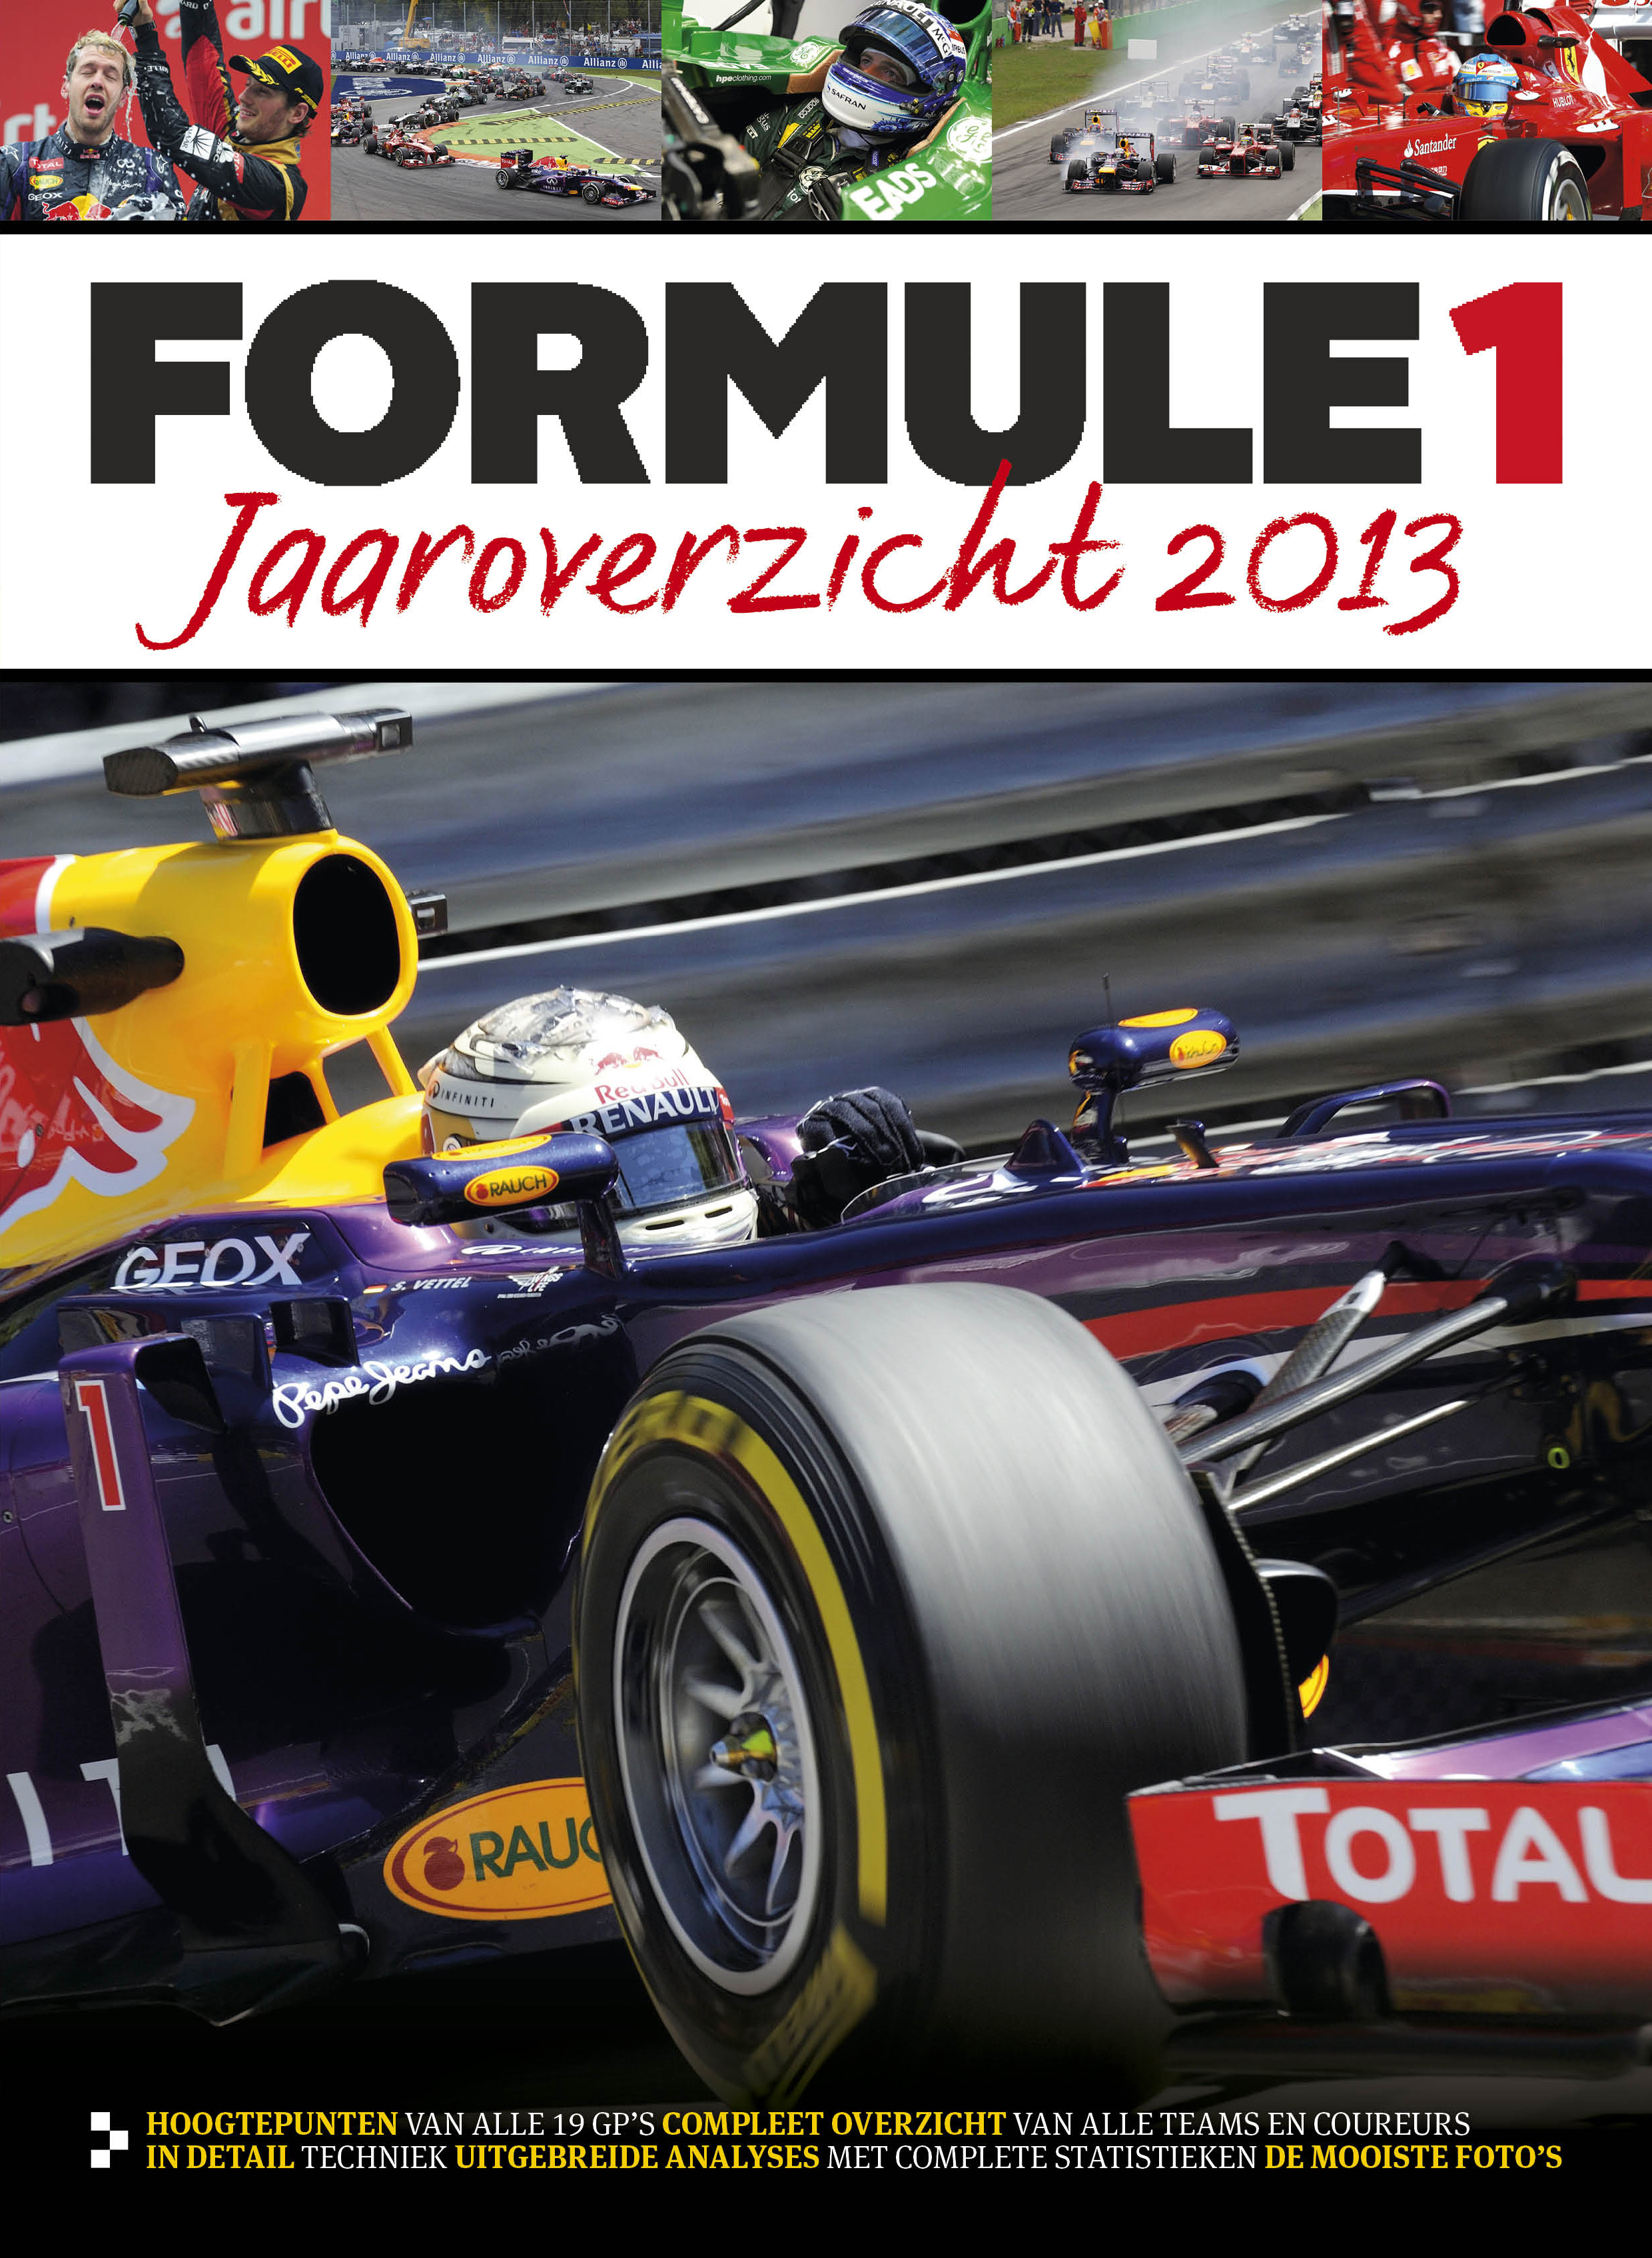 Formule 1 Jaaroverzicht 2013 is uit!